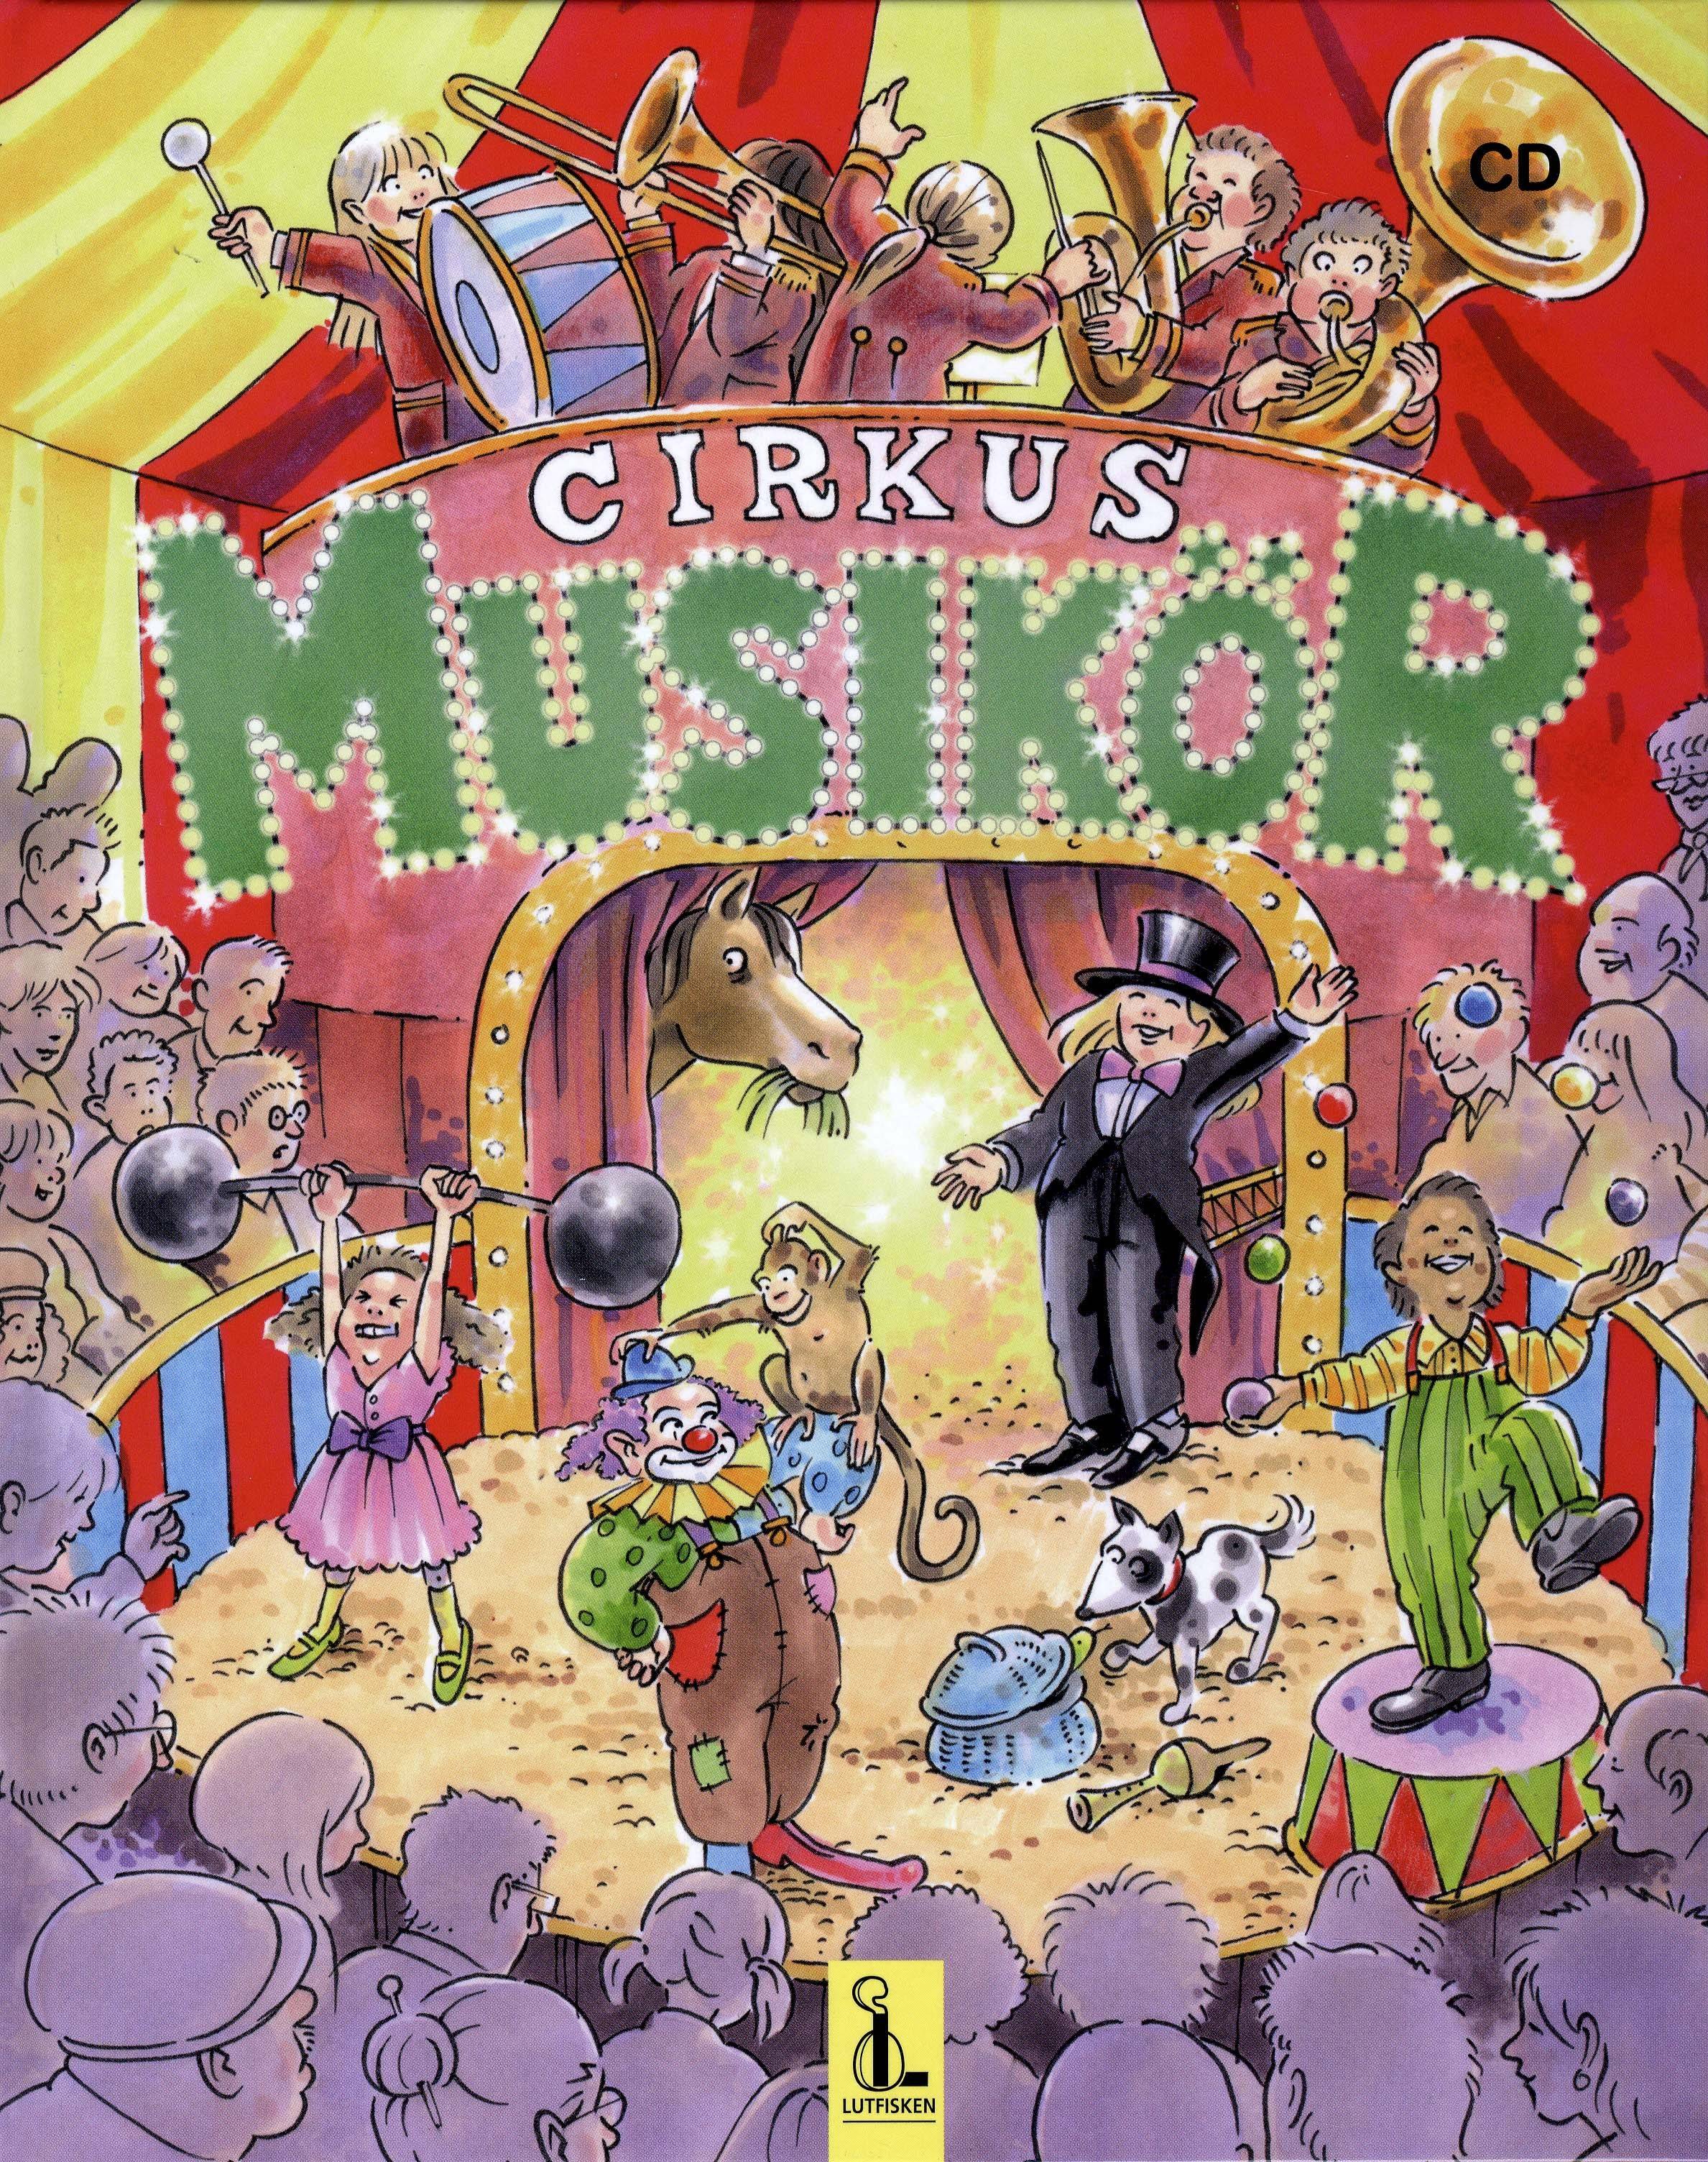 Cirkus Musikör inkl CD